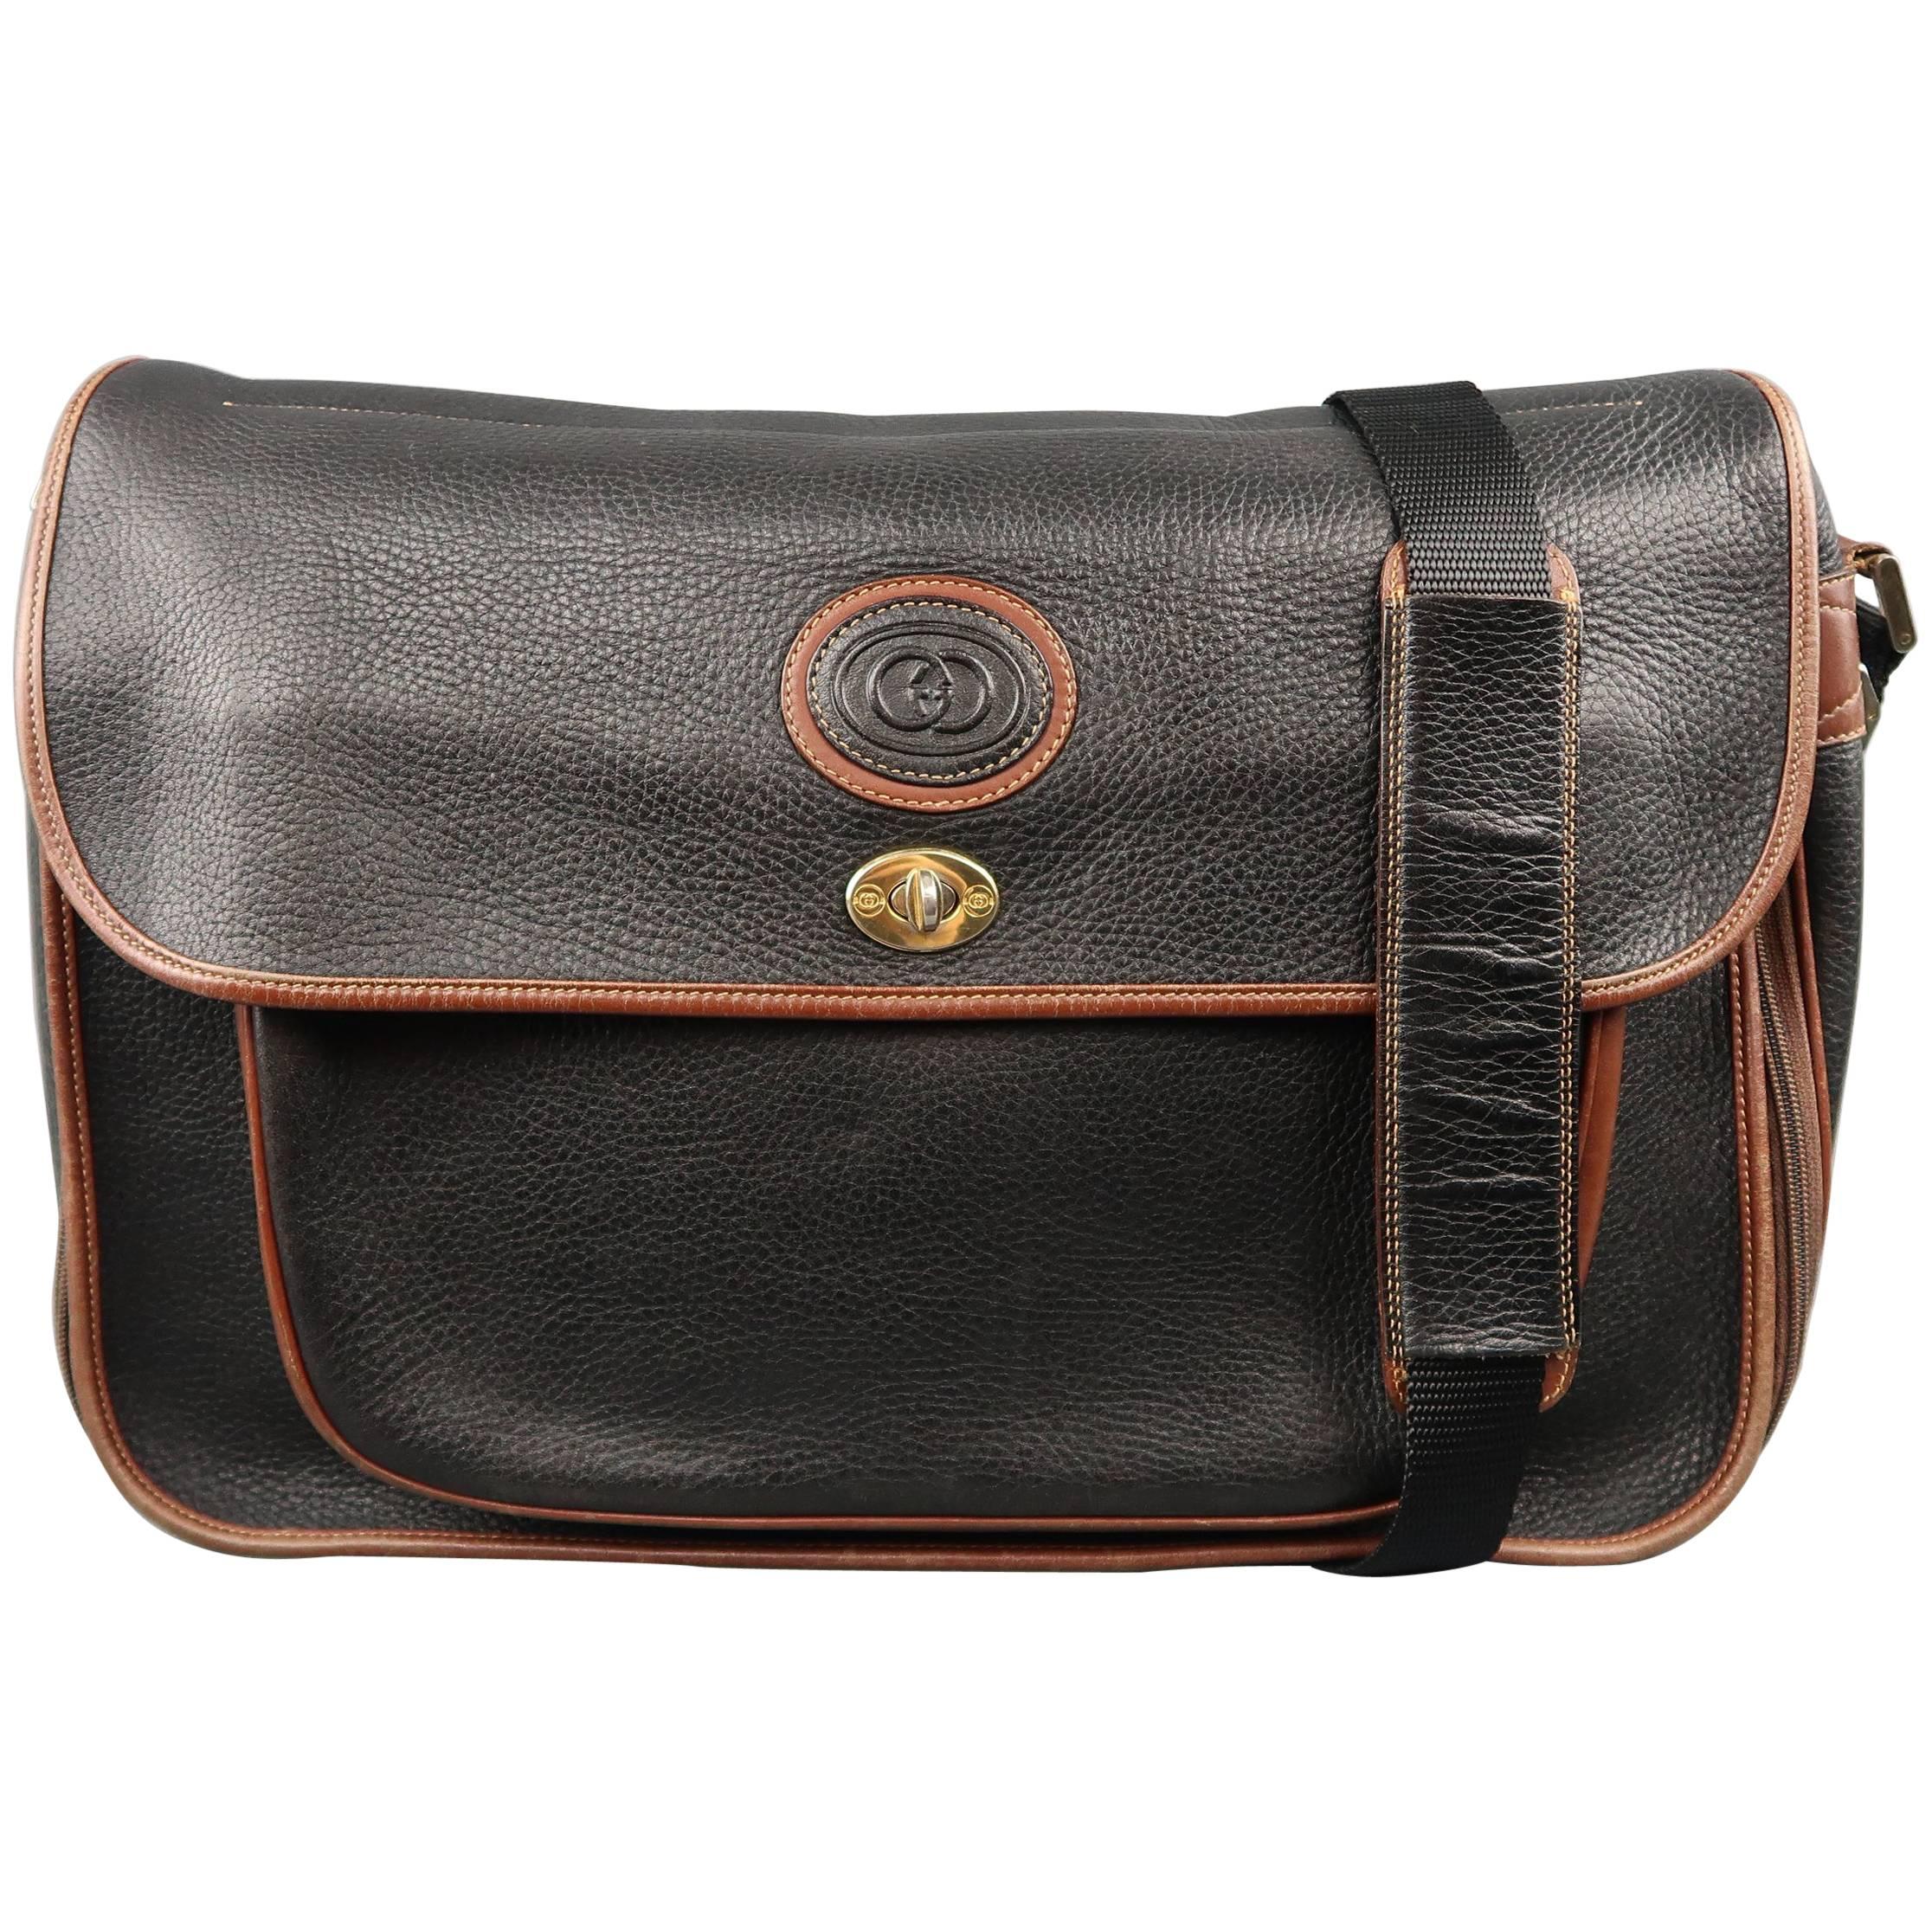 Vintage GUCCI Bag Black & Brown Leather Crossbody Shoulder Messenger Bag